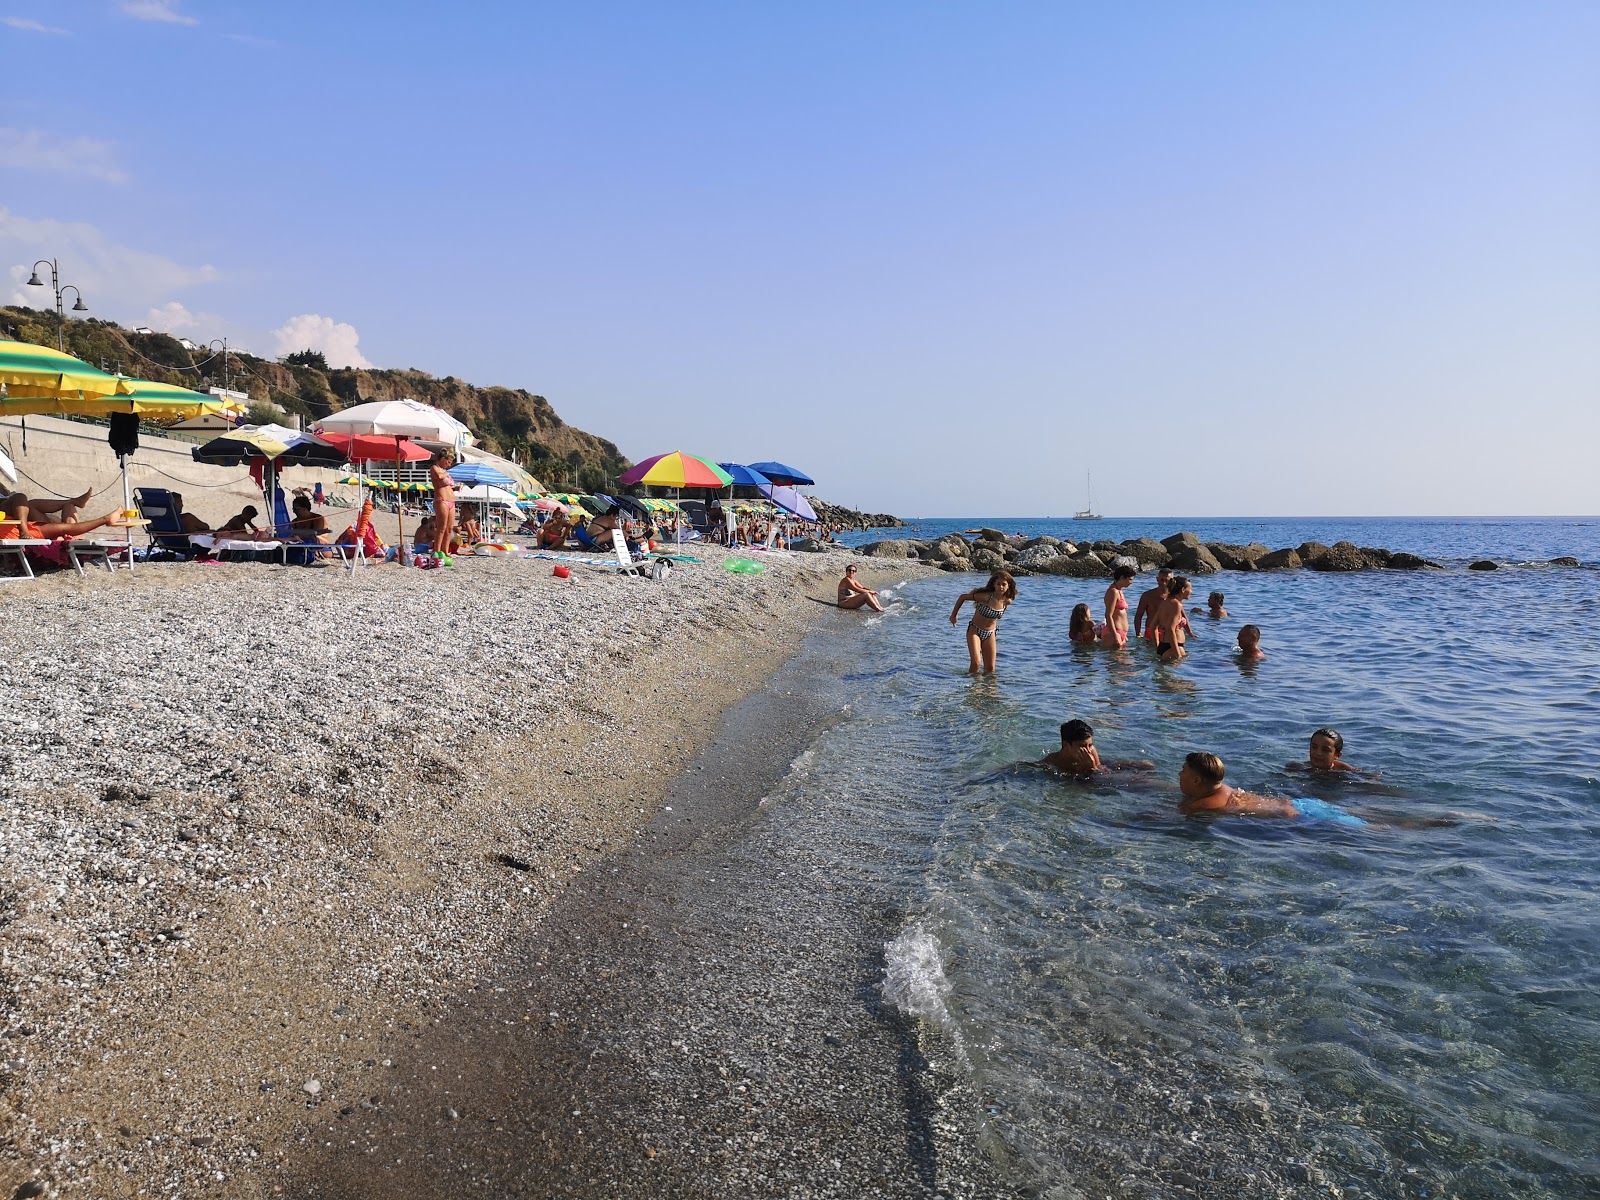 Marina di Belvedere'in fotoğrafı geniş plaj ile birlikte